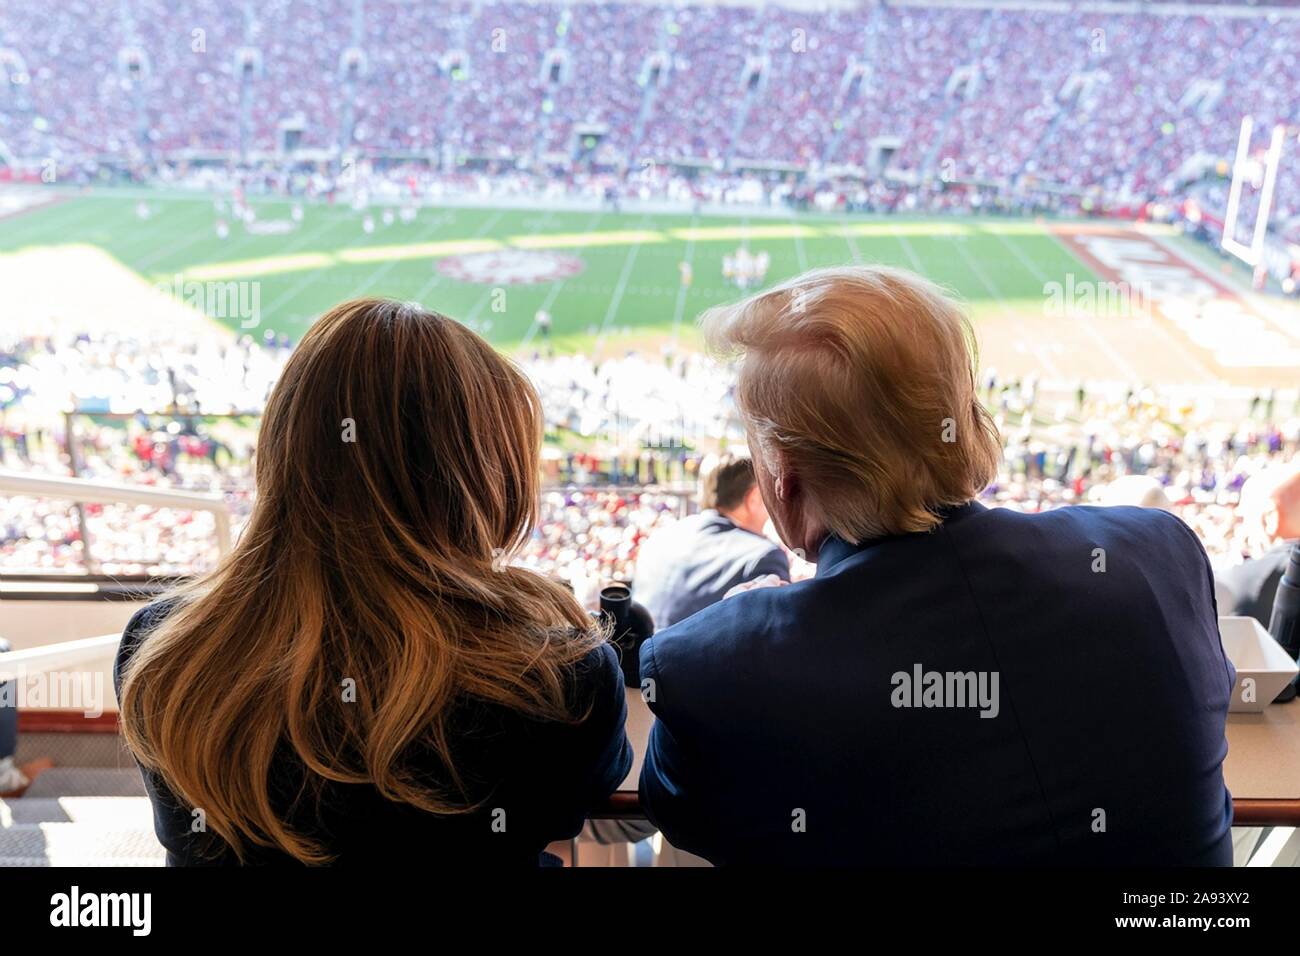 U.S presidente Donald Trump e la First Lady Melania Trump guarda alla University of Alabama vs Università dello stato della Louisiana del gioco del calcio presso lo Stadio Bryant-Denny Novembre 9, 2019 in Tuscaloosa, Alabama. Foto Stock